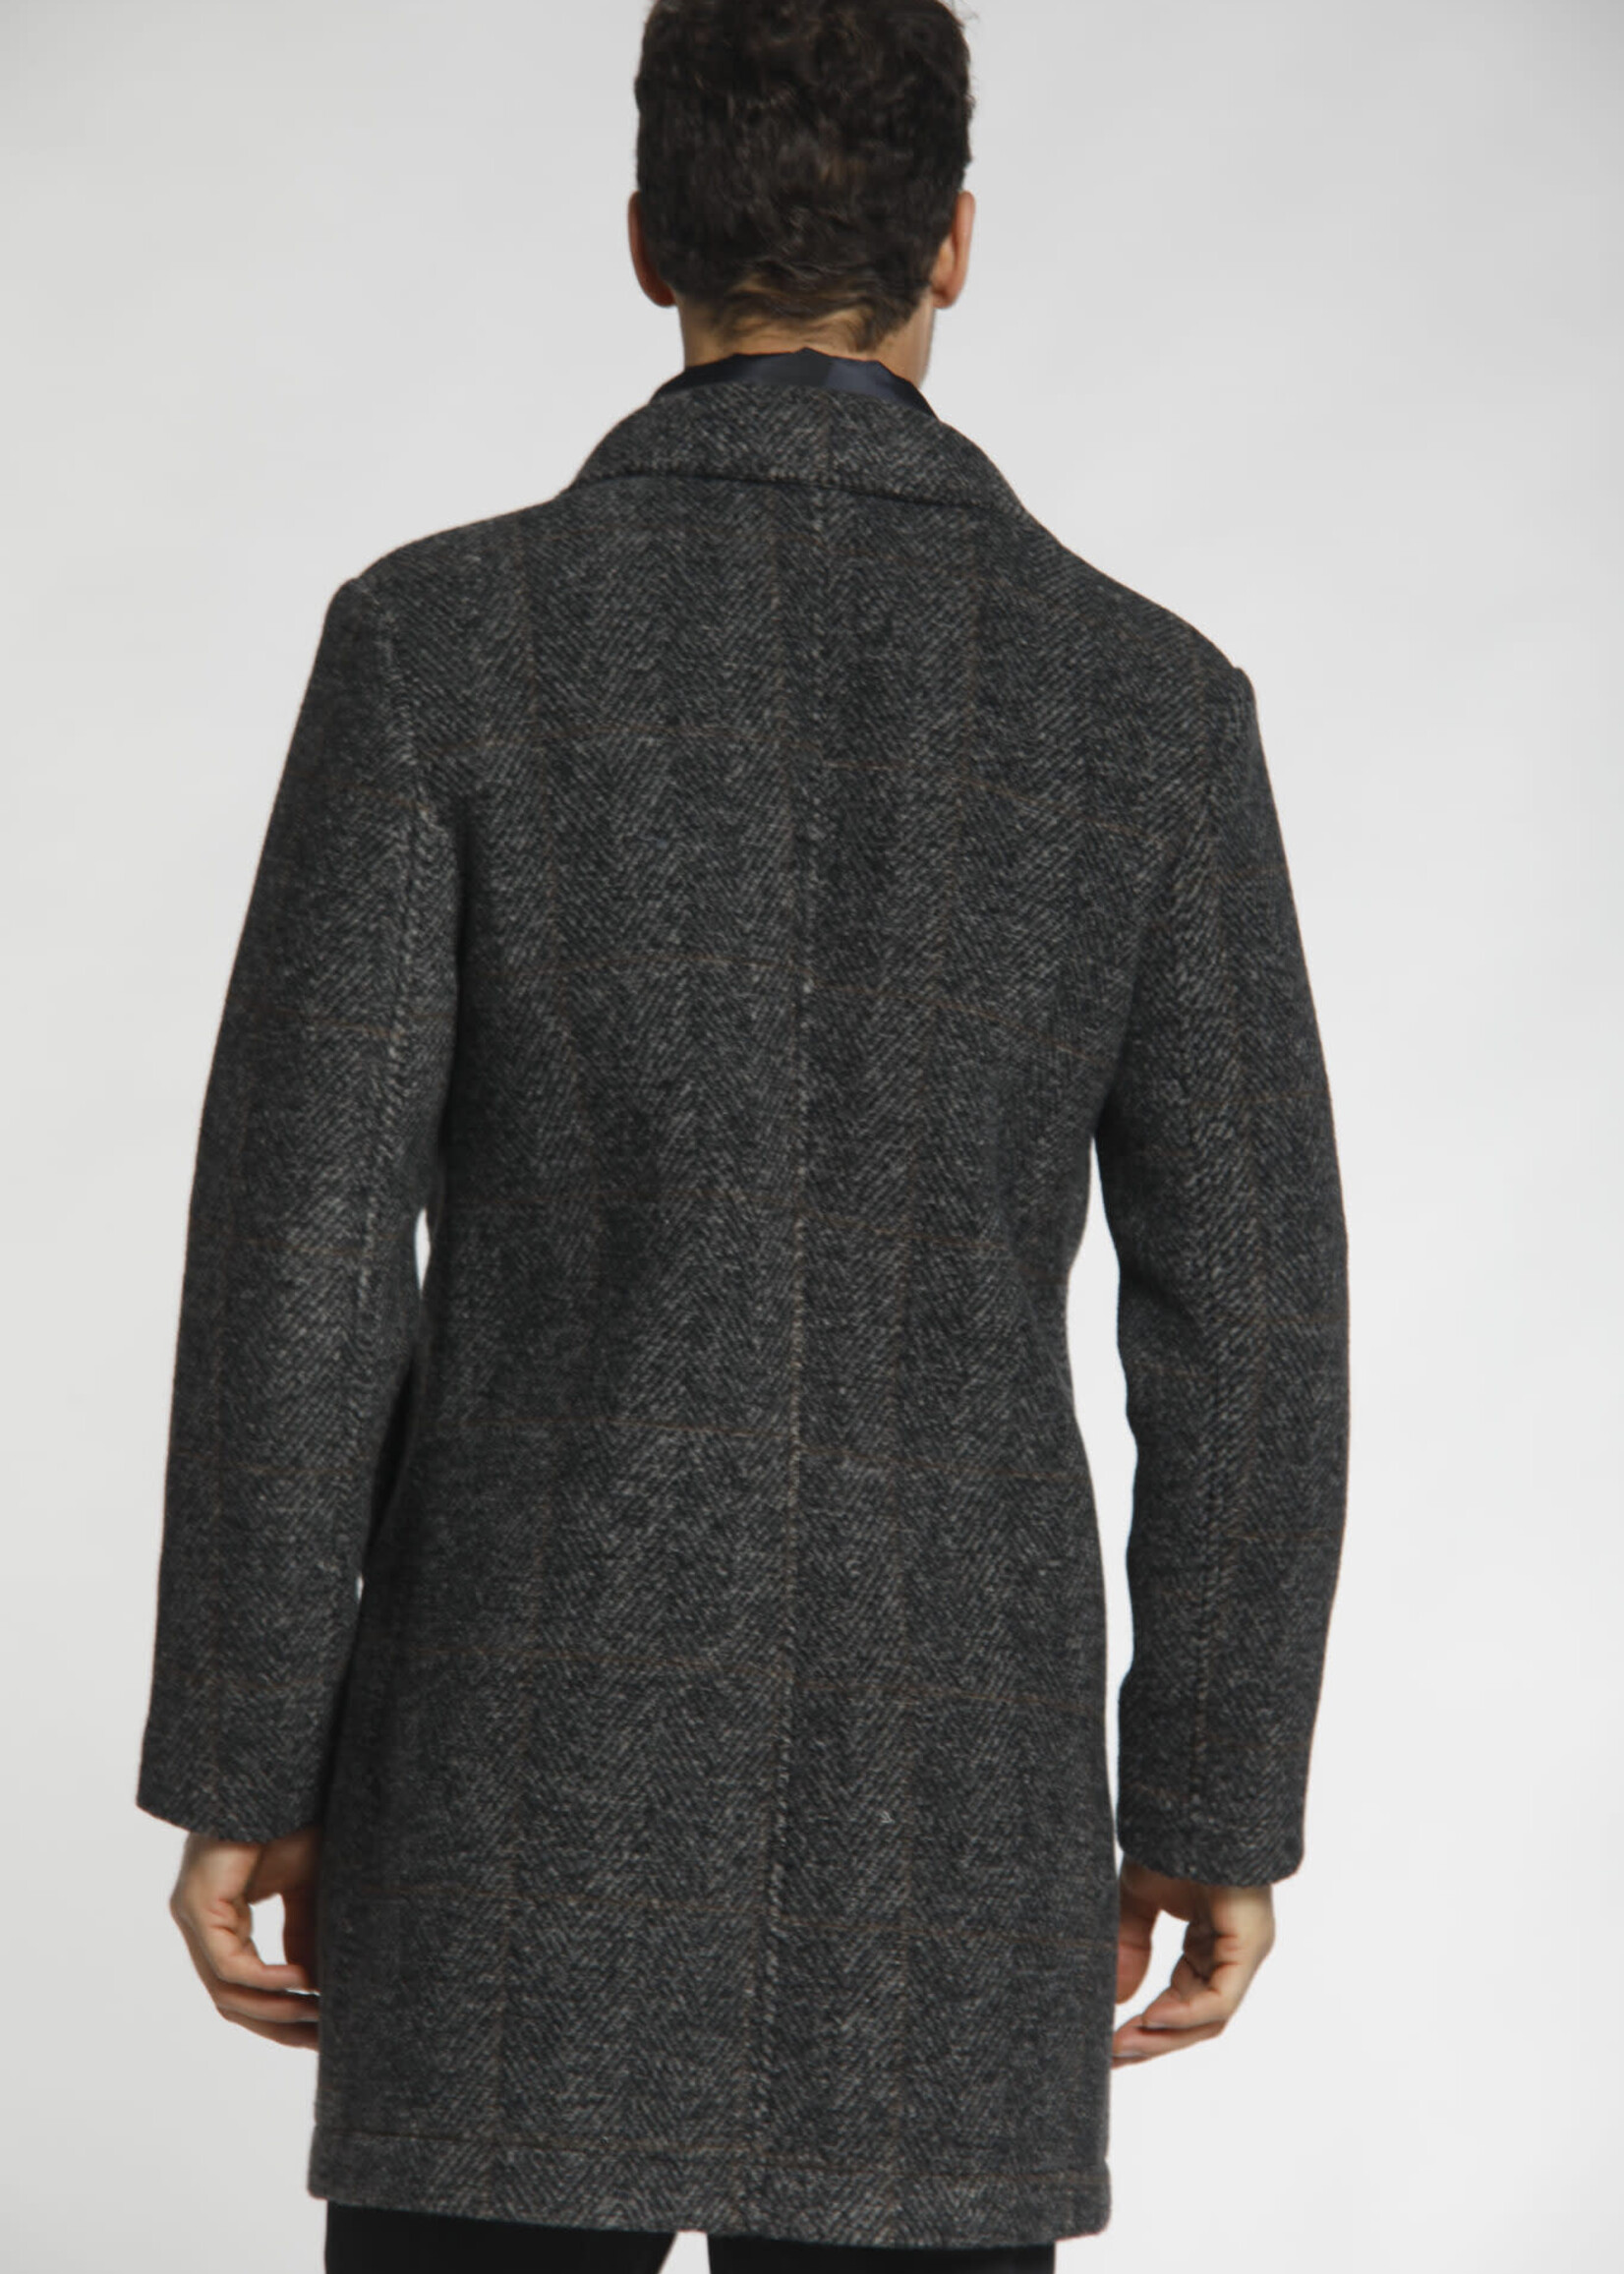 Los Angeles Manteau homme en laine avec motif résca - Mason's